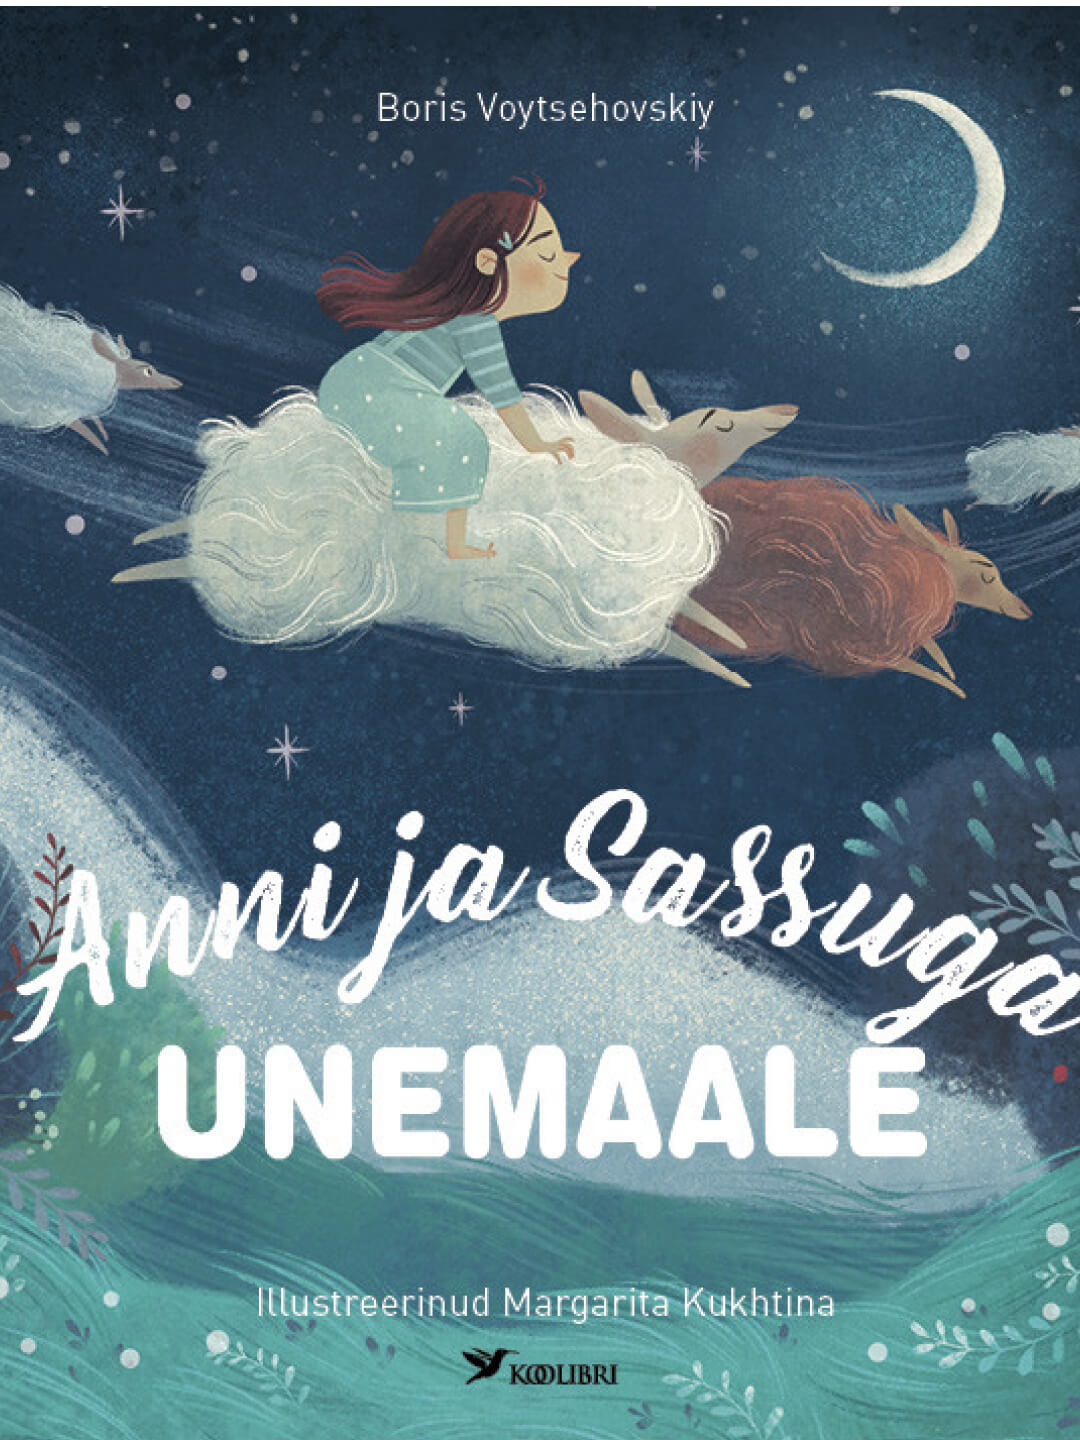 Children's book, raamat Anni ja Sassuga unemaale